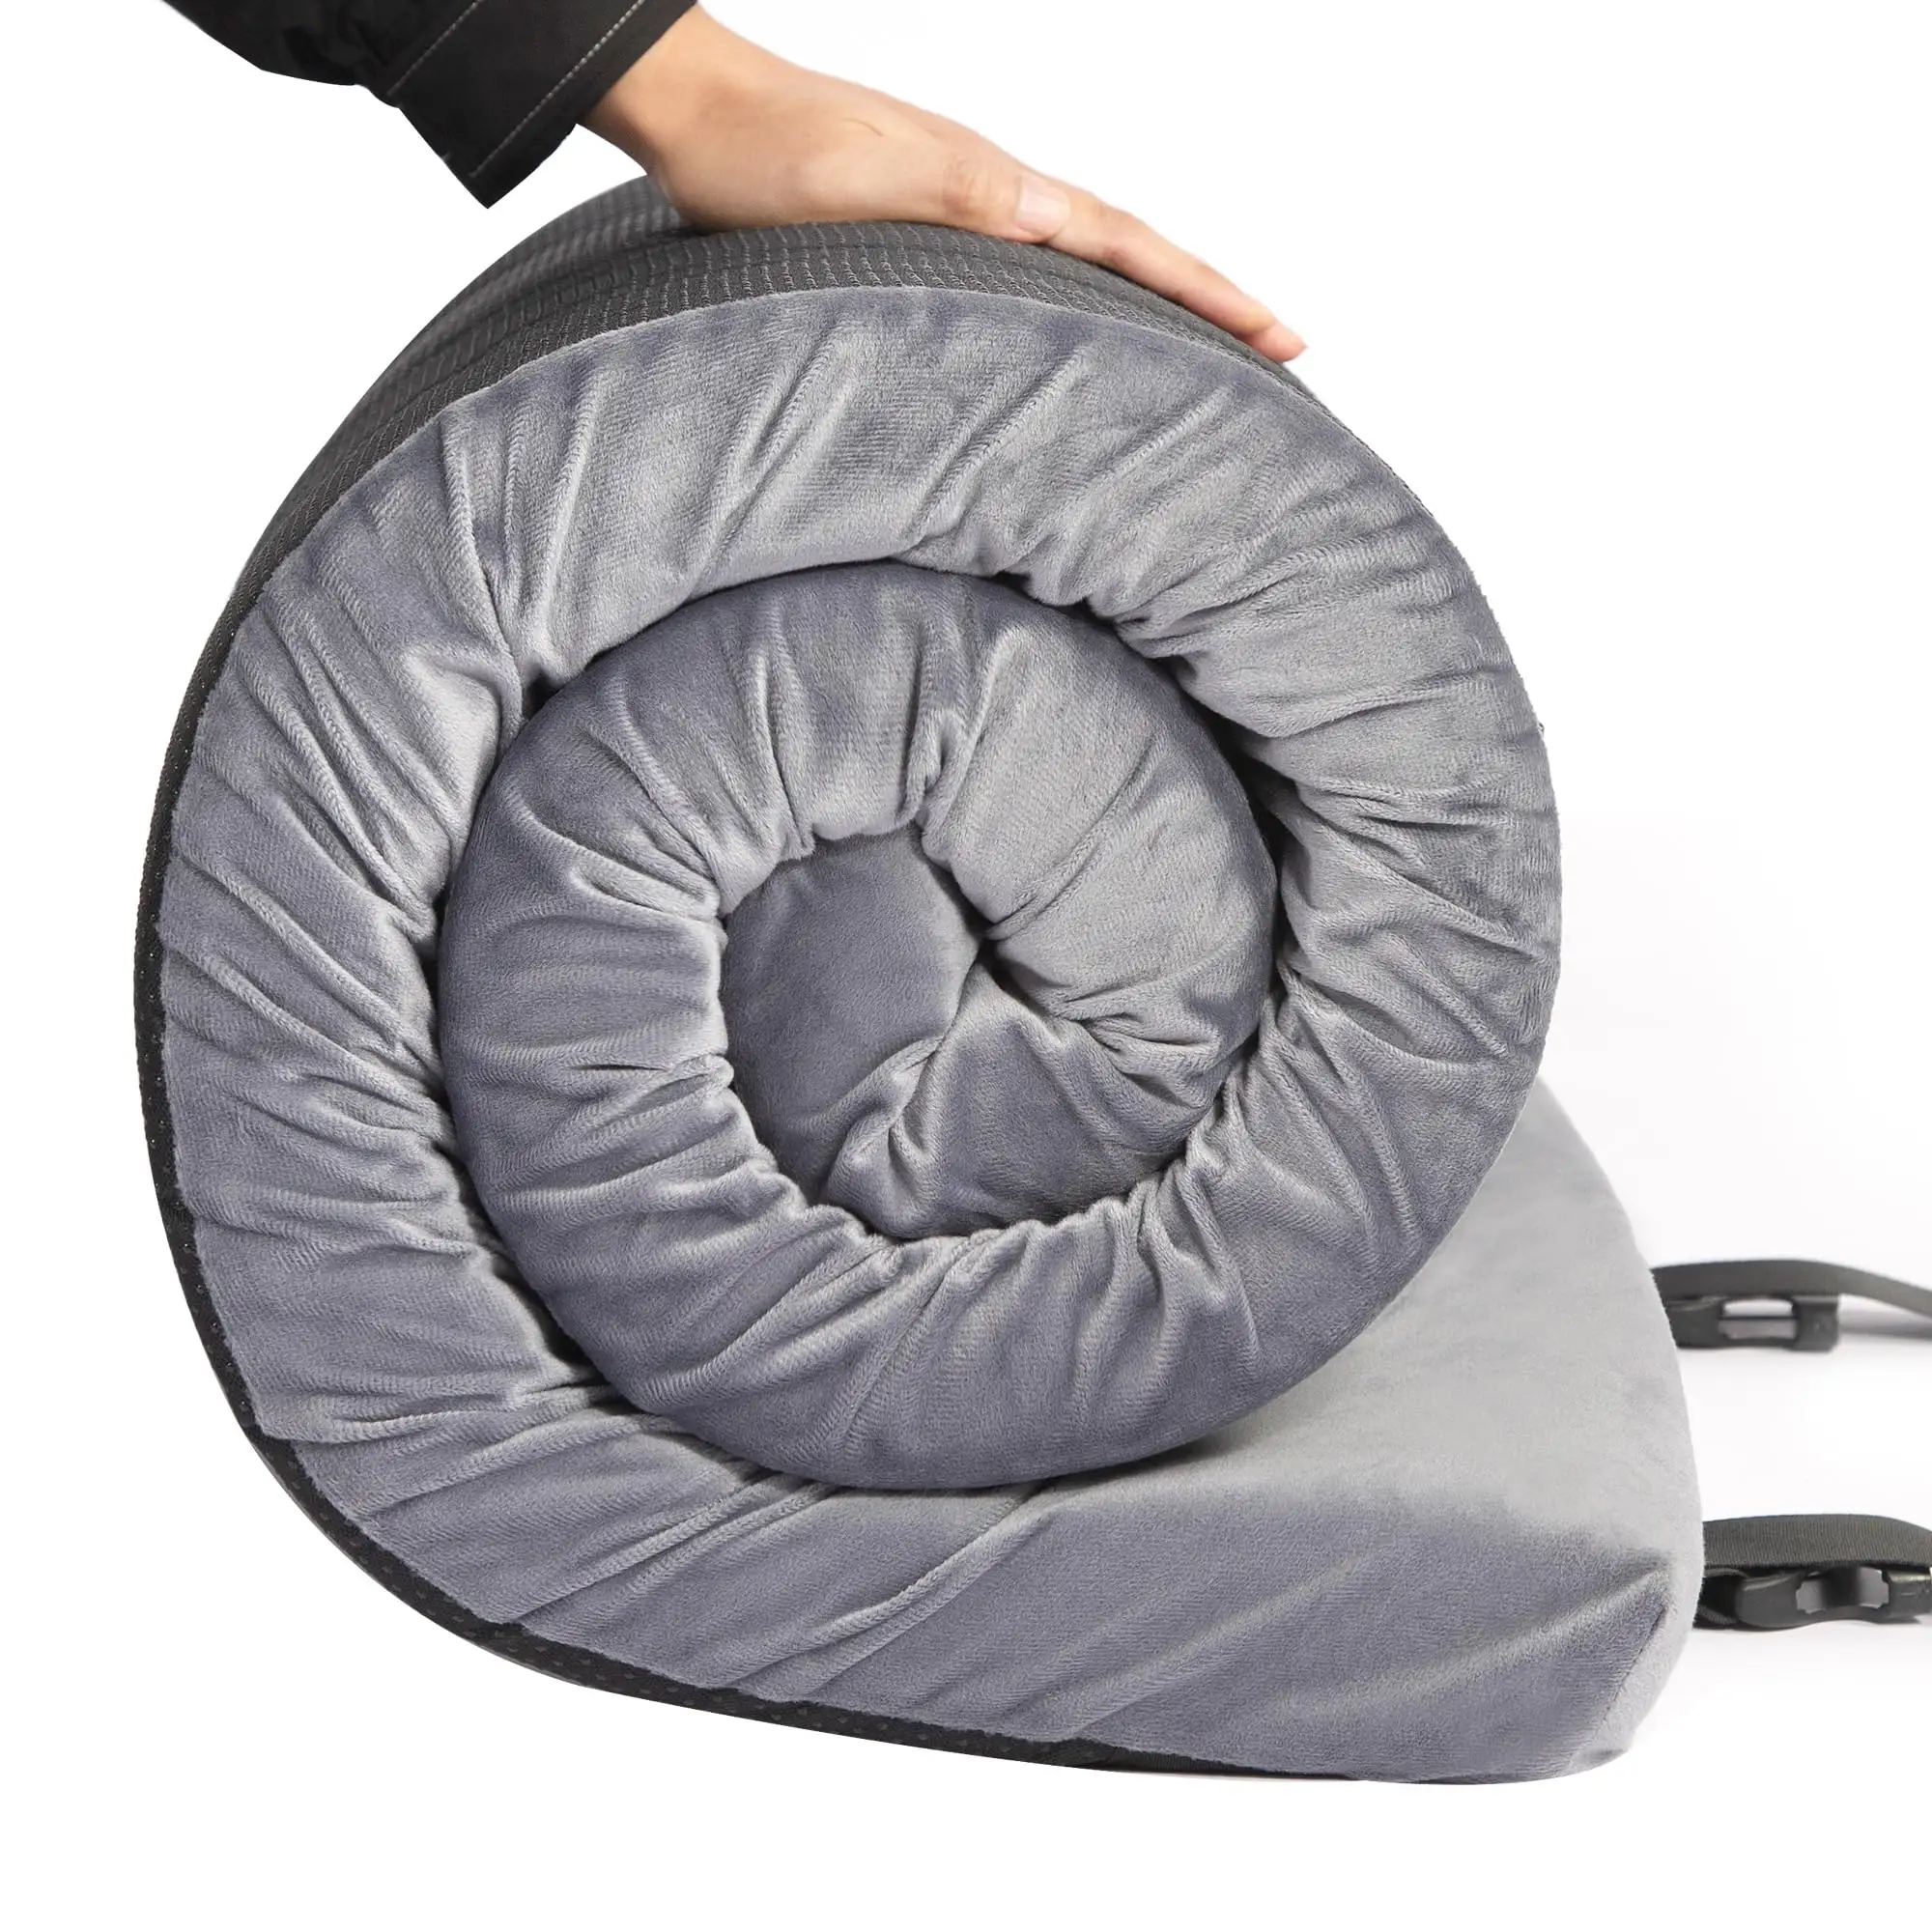 Dicke Memory-Schaum-Camping-Matratze Schlafpolster 3 Zoll tragbare Bodenmatte zum Aufrollen für Gäste Kinder Erwachsene Übernachtung